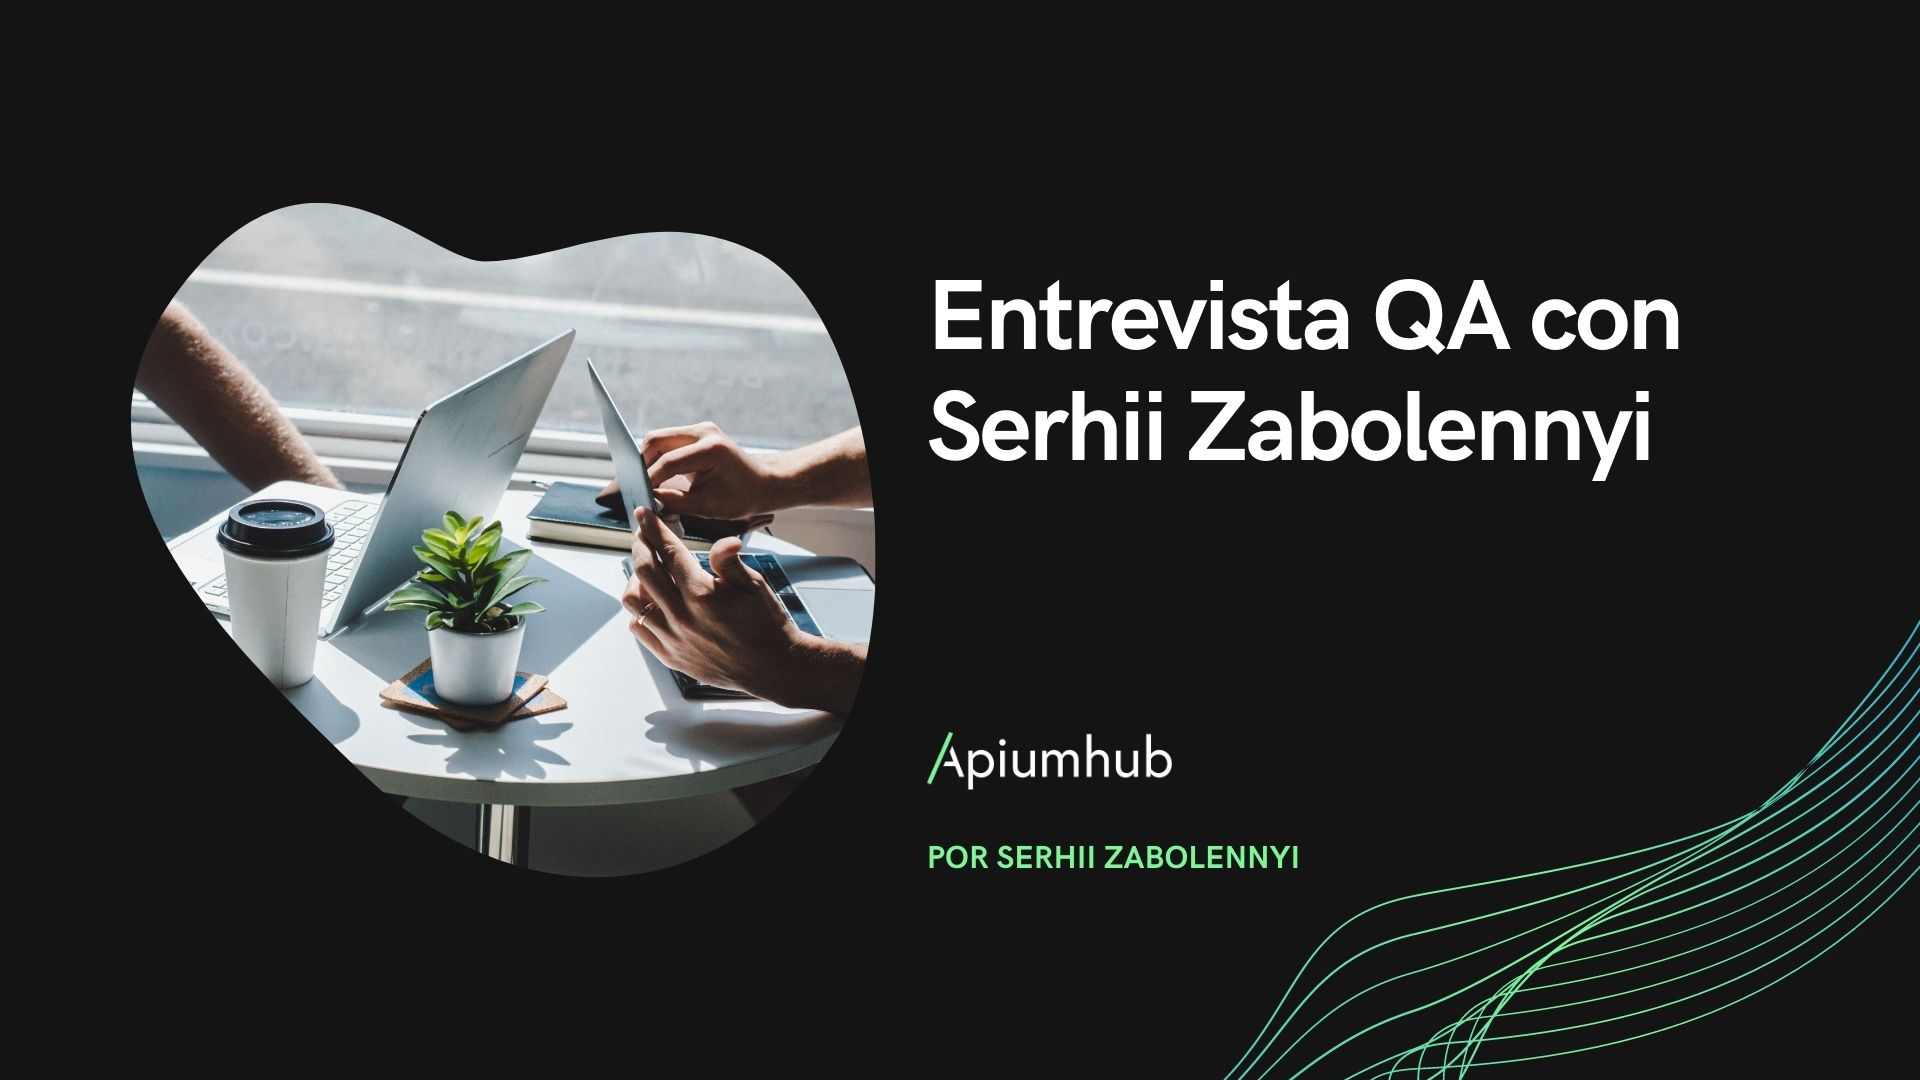 Entrevista QA con Serhii Zabolennyi - Ingeniero de automatización de QA en Apiumhub